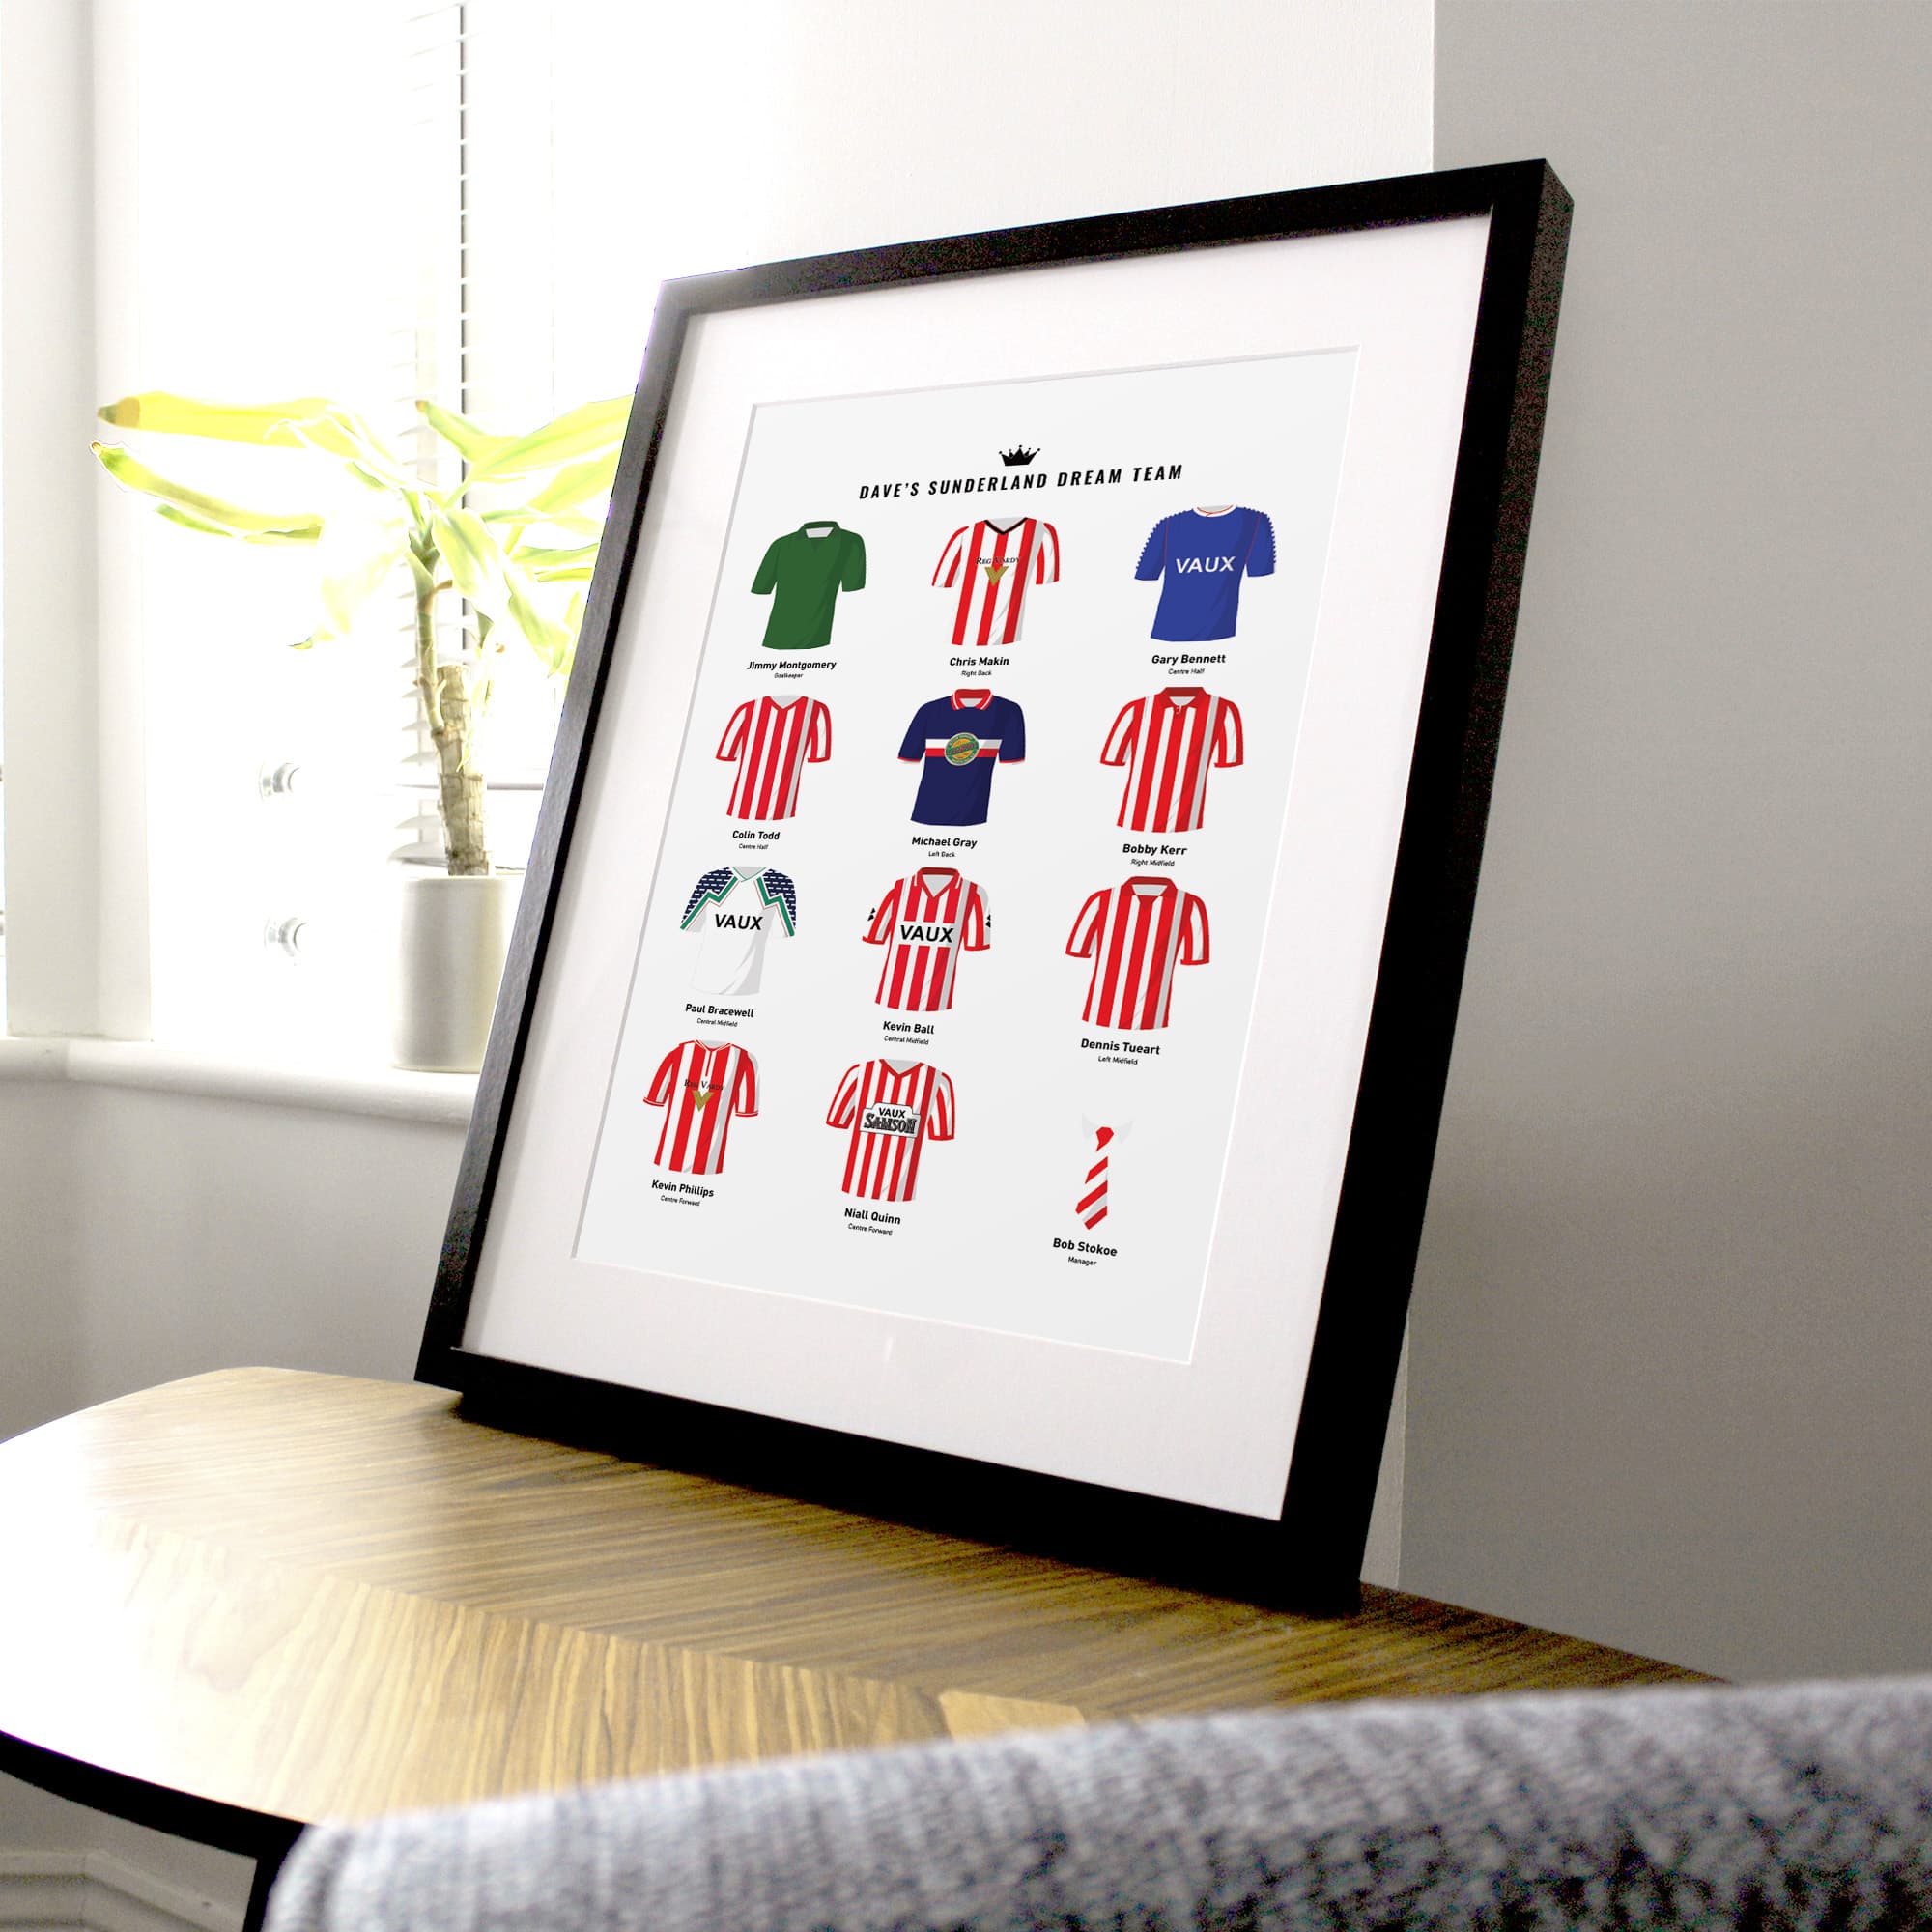 PERSONALISED Sunderland Dream Team Football Print Good Team On Paper